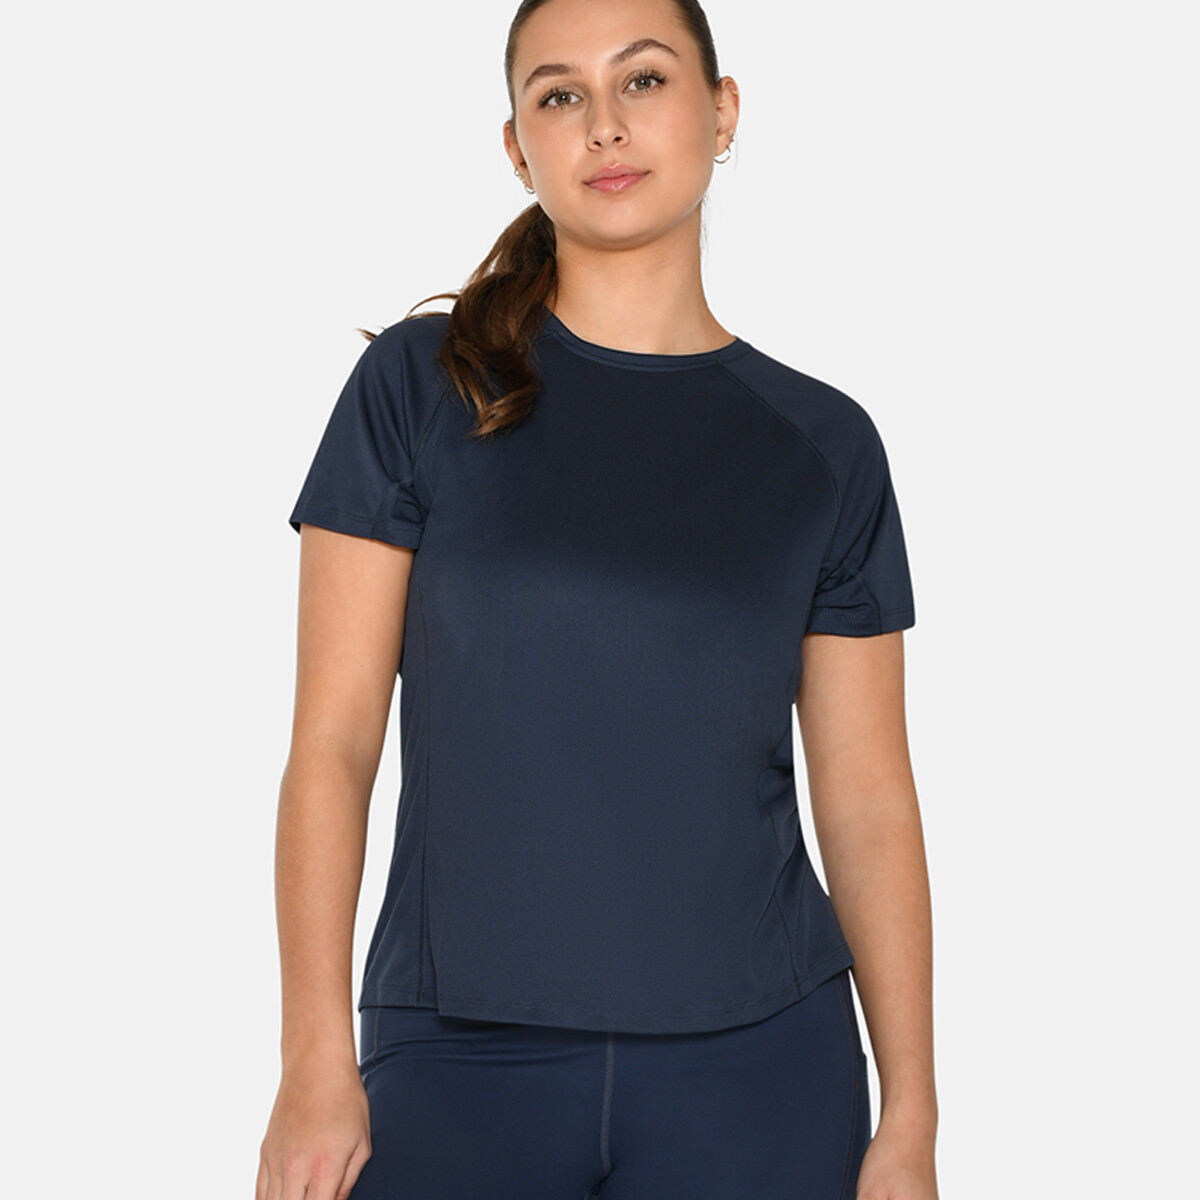 Se Zebdia Women Sports T-shirt, Farve: Blå, Størrelse: XL, Dame hos Netlingeri.dk